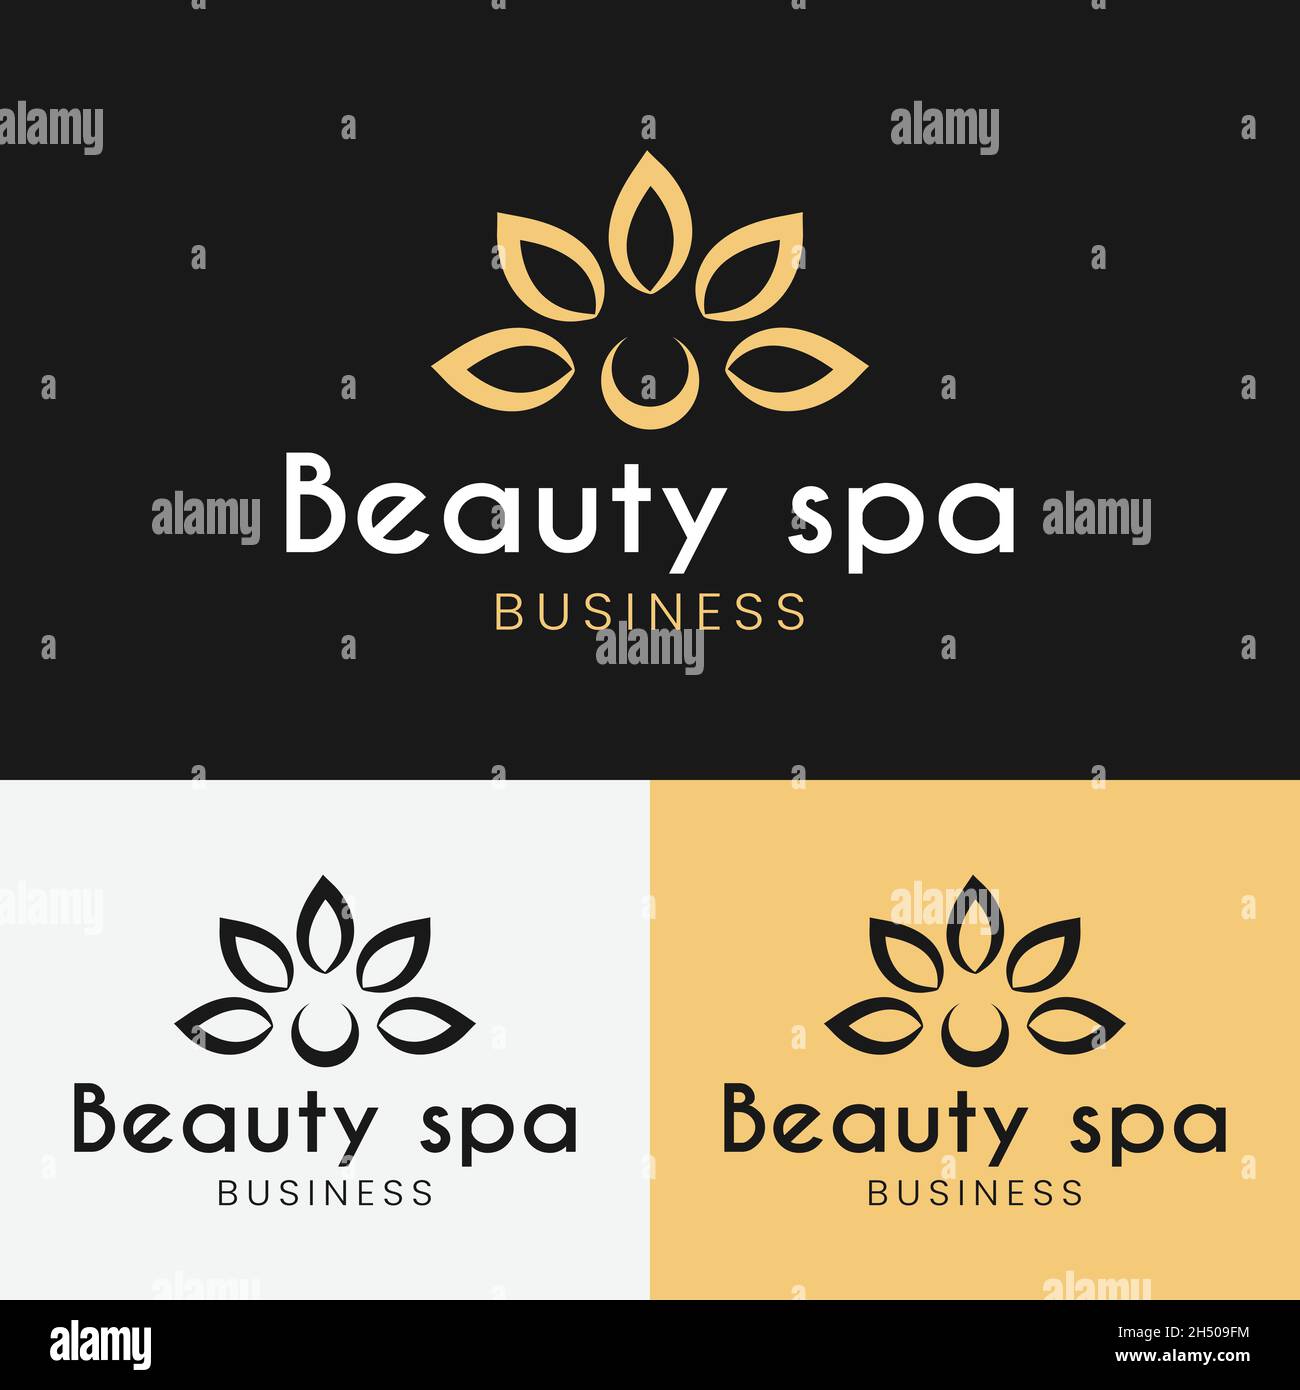 Abstract petali di fiori per Beauty Spa Logo Design Template. Simbolo minimalista del fiore di loto. Adatto per la Dermatologia cosmetica Beauty Medi Spa Therapy Illustrazione Vettoriale